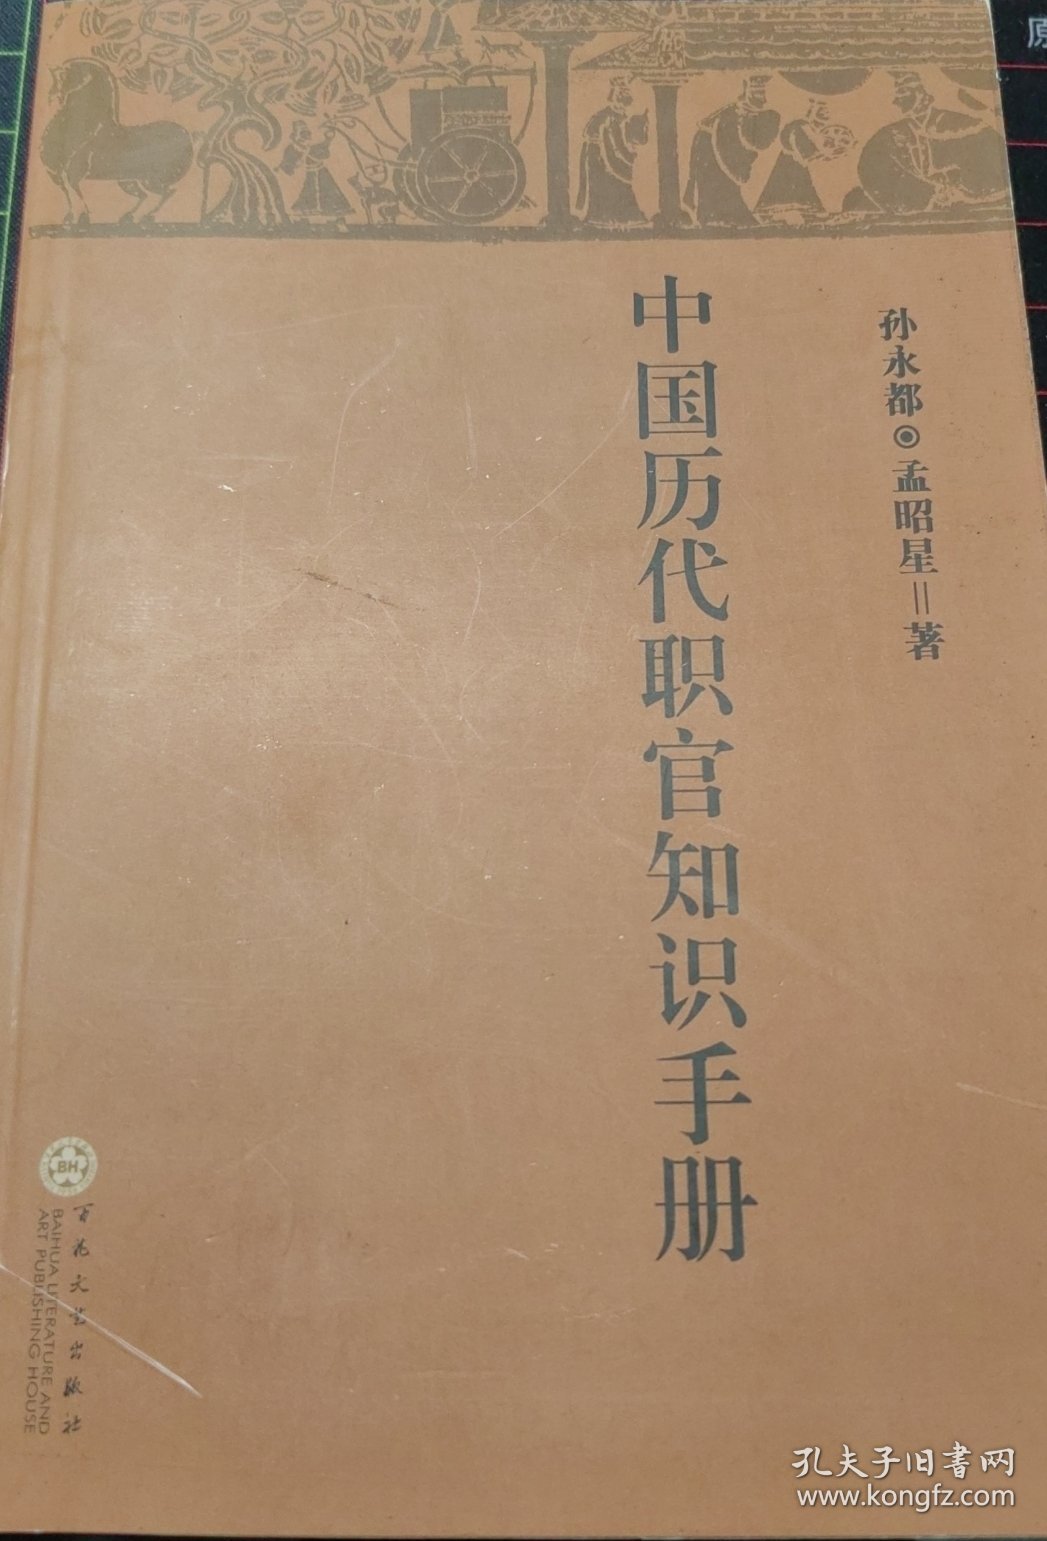 中国历代职官知识手册